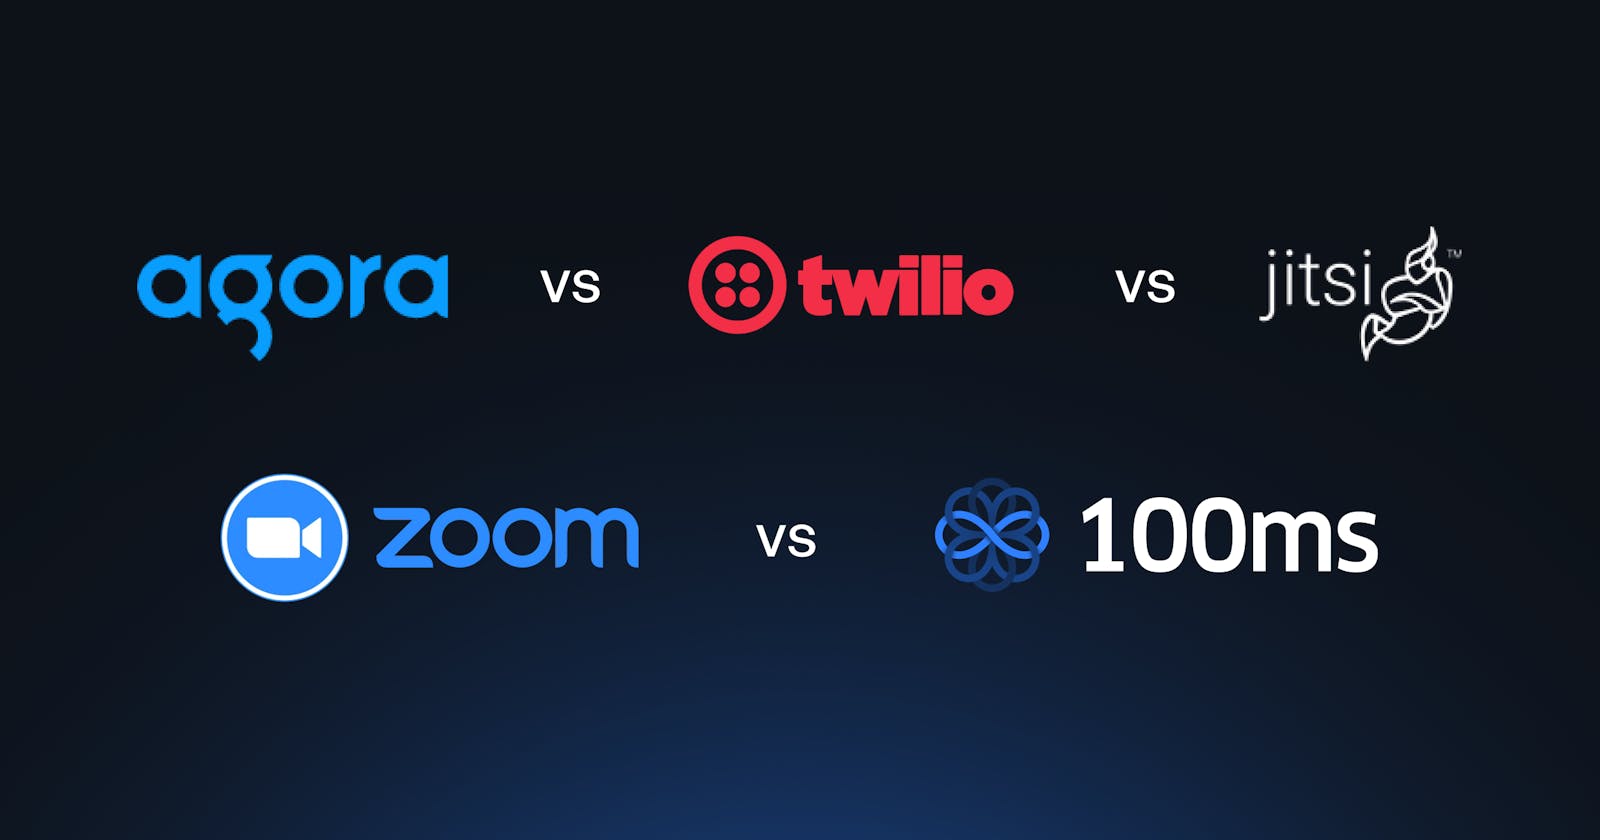 Agora vs Twilio vs Jitsi vs Zoom vs 100ms: A Quick Comparison